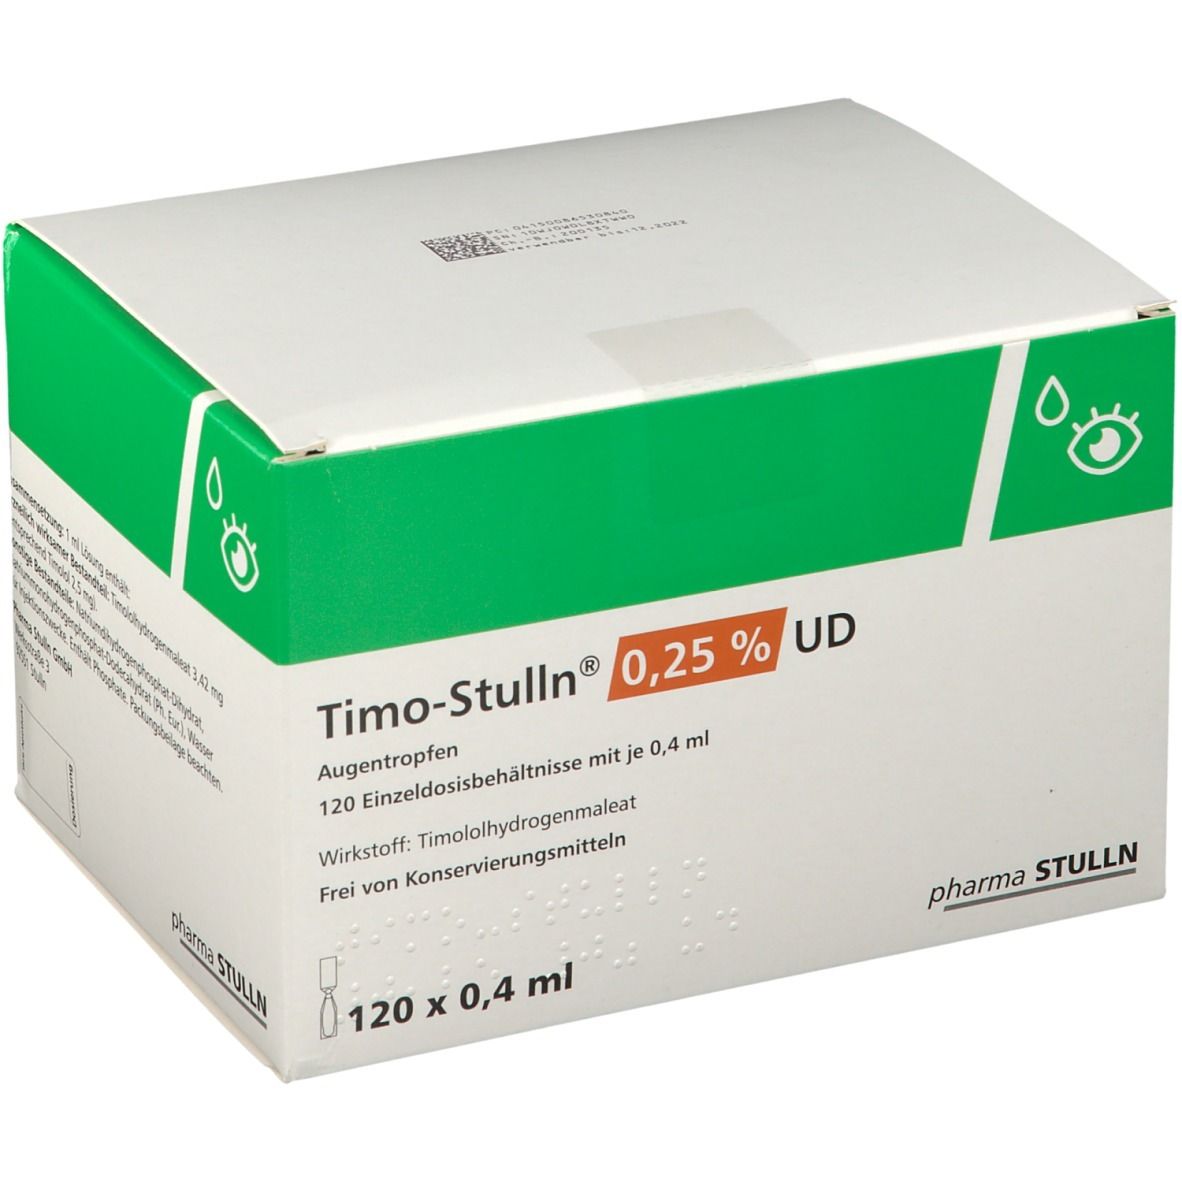 Timo-Stulln® 0,25 % UD